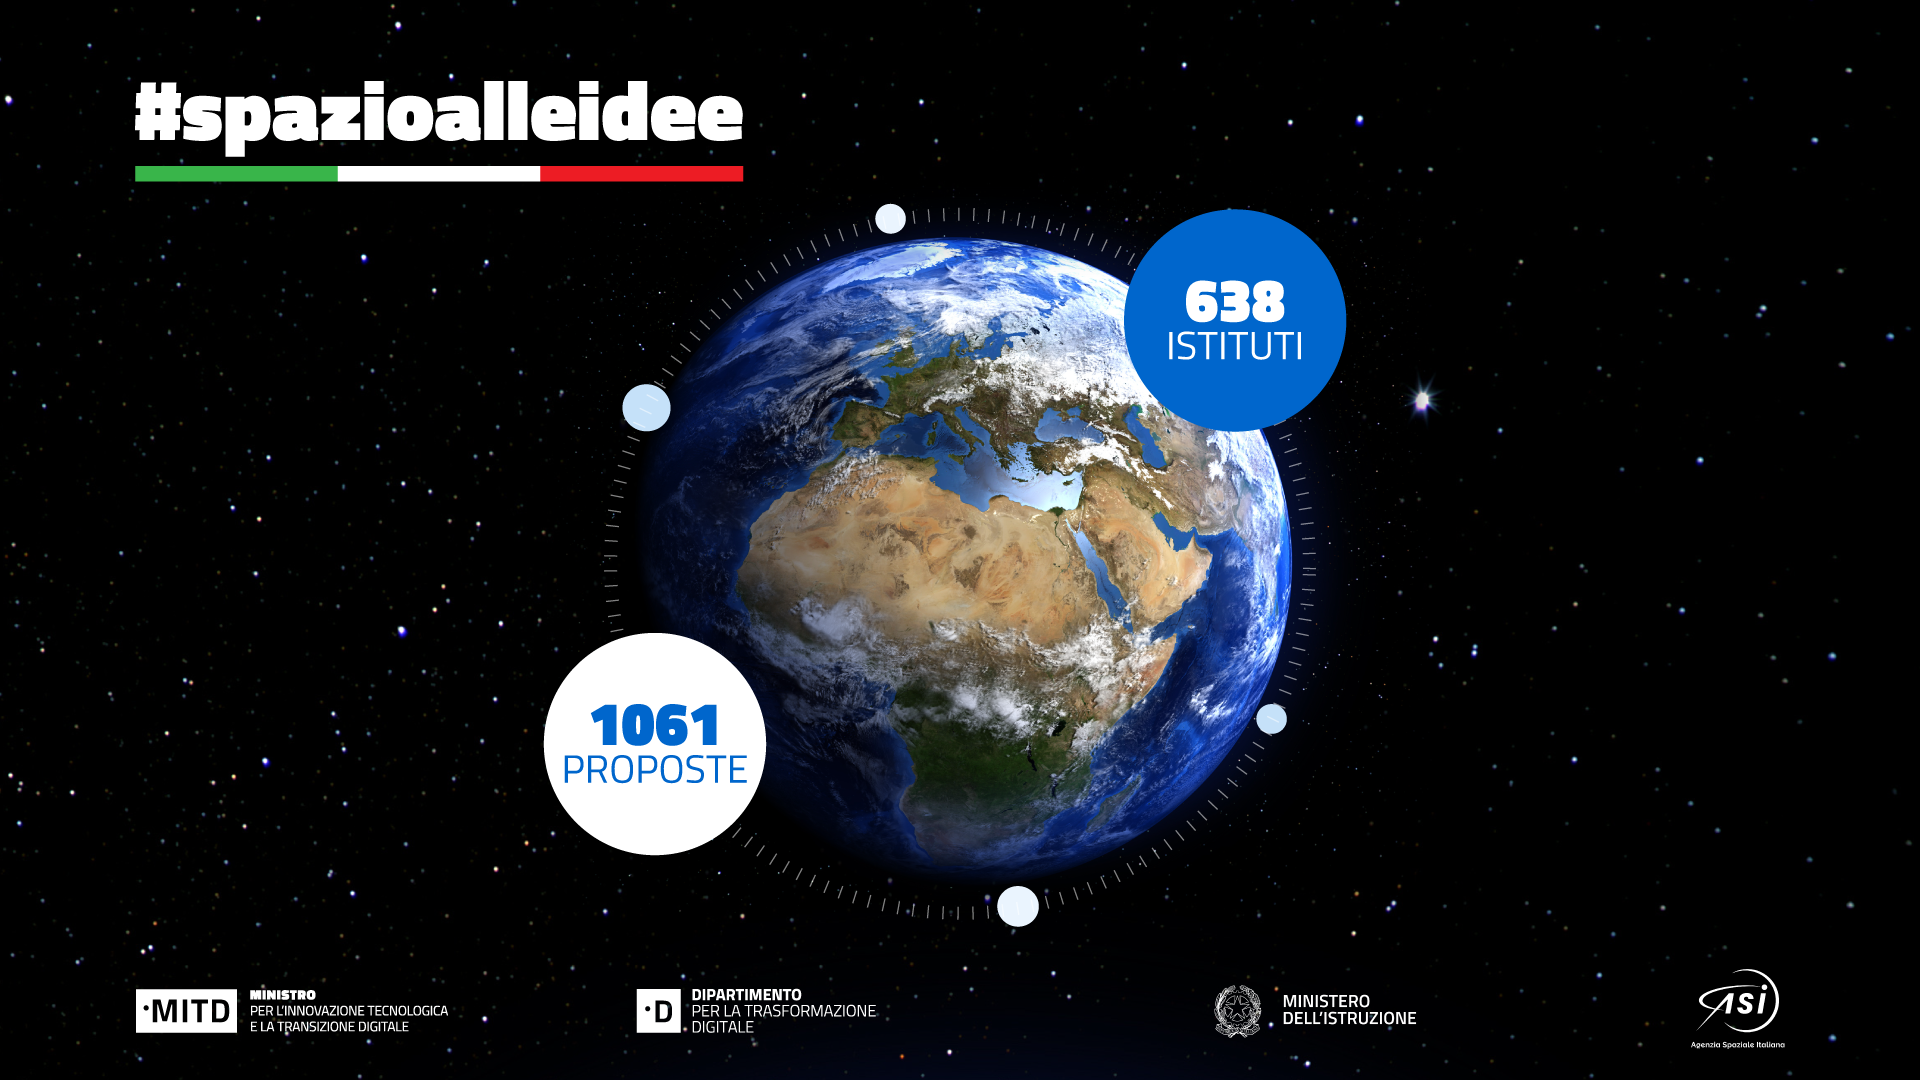 “Spazio alle idee”: oltre 1000 proposte per il nome della futura costellazione satellitare italiana di Osservazione della Terra